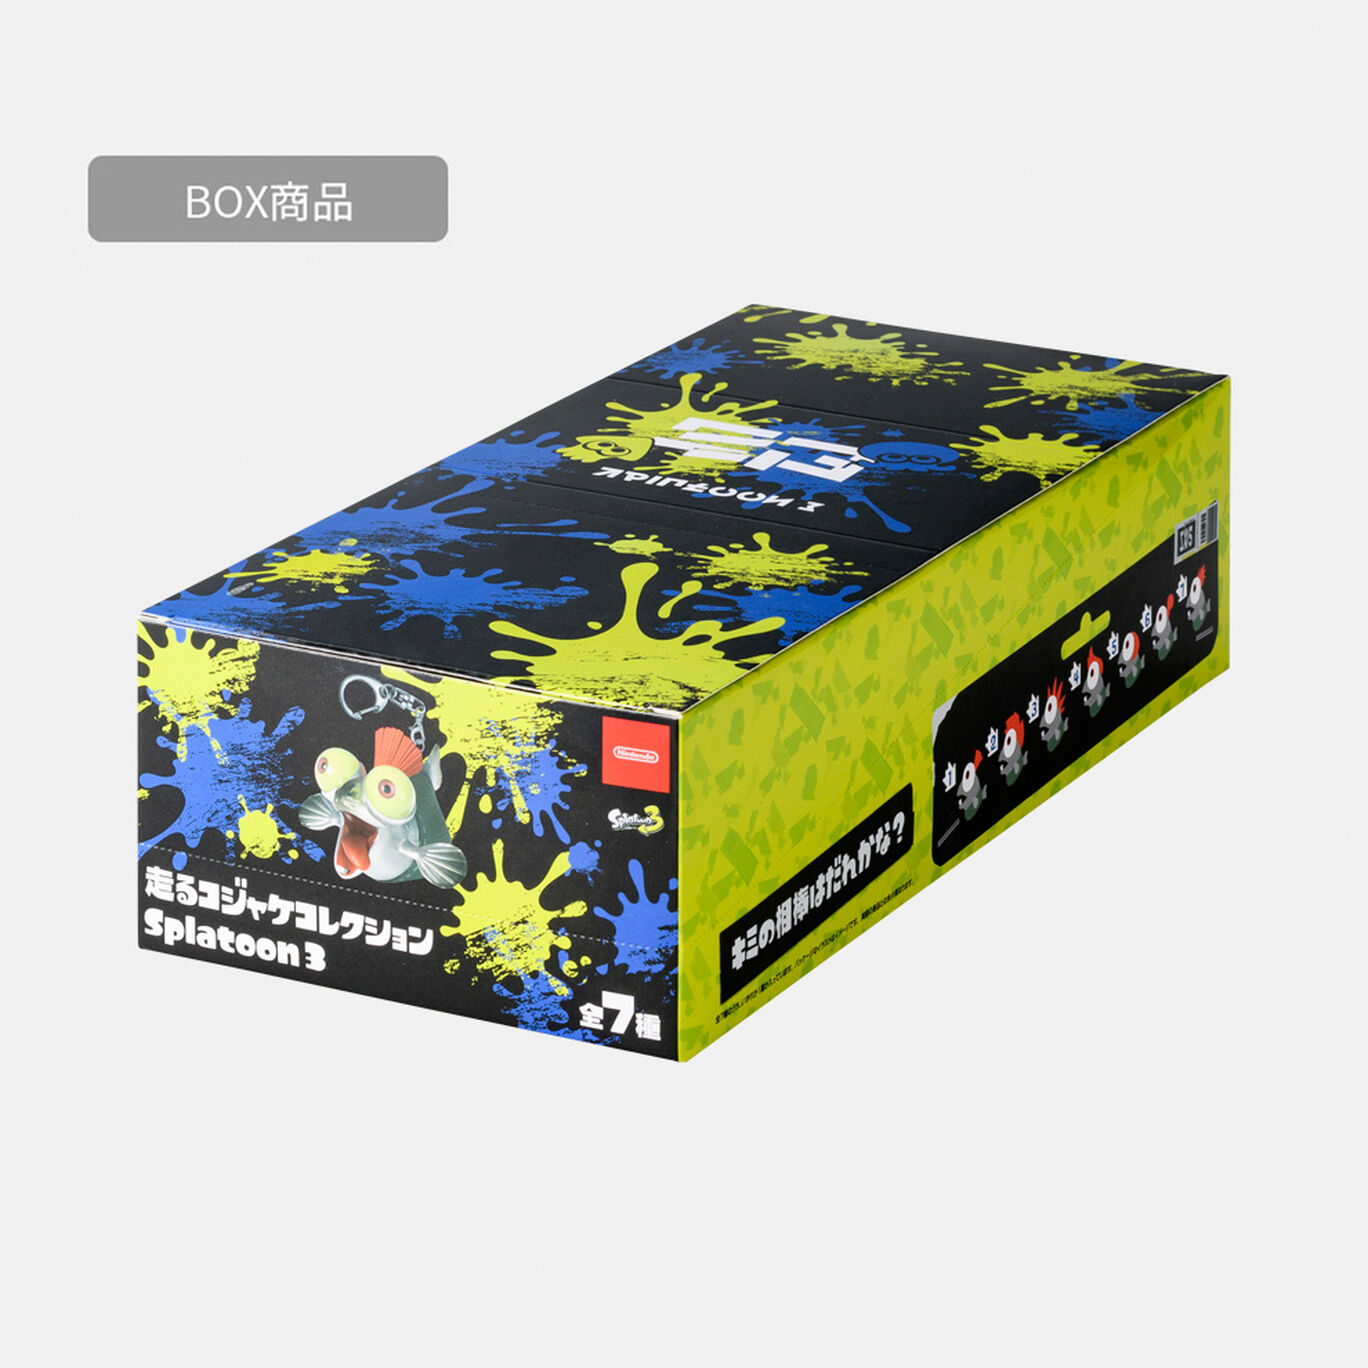 【BOX商品】走るコジャケコレクション Splatoon 3【Nintendo TOKYO/OSAKA取り扱い商品】